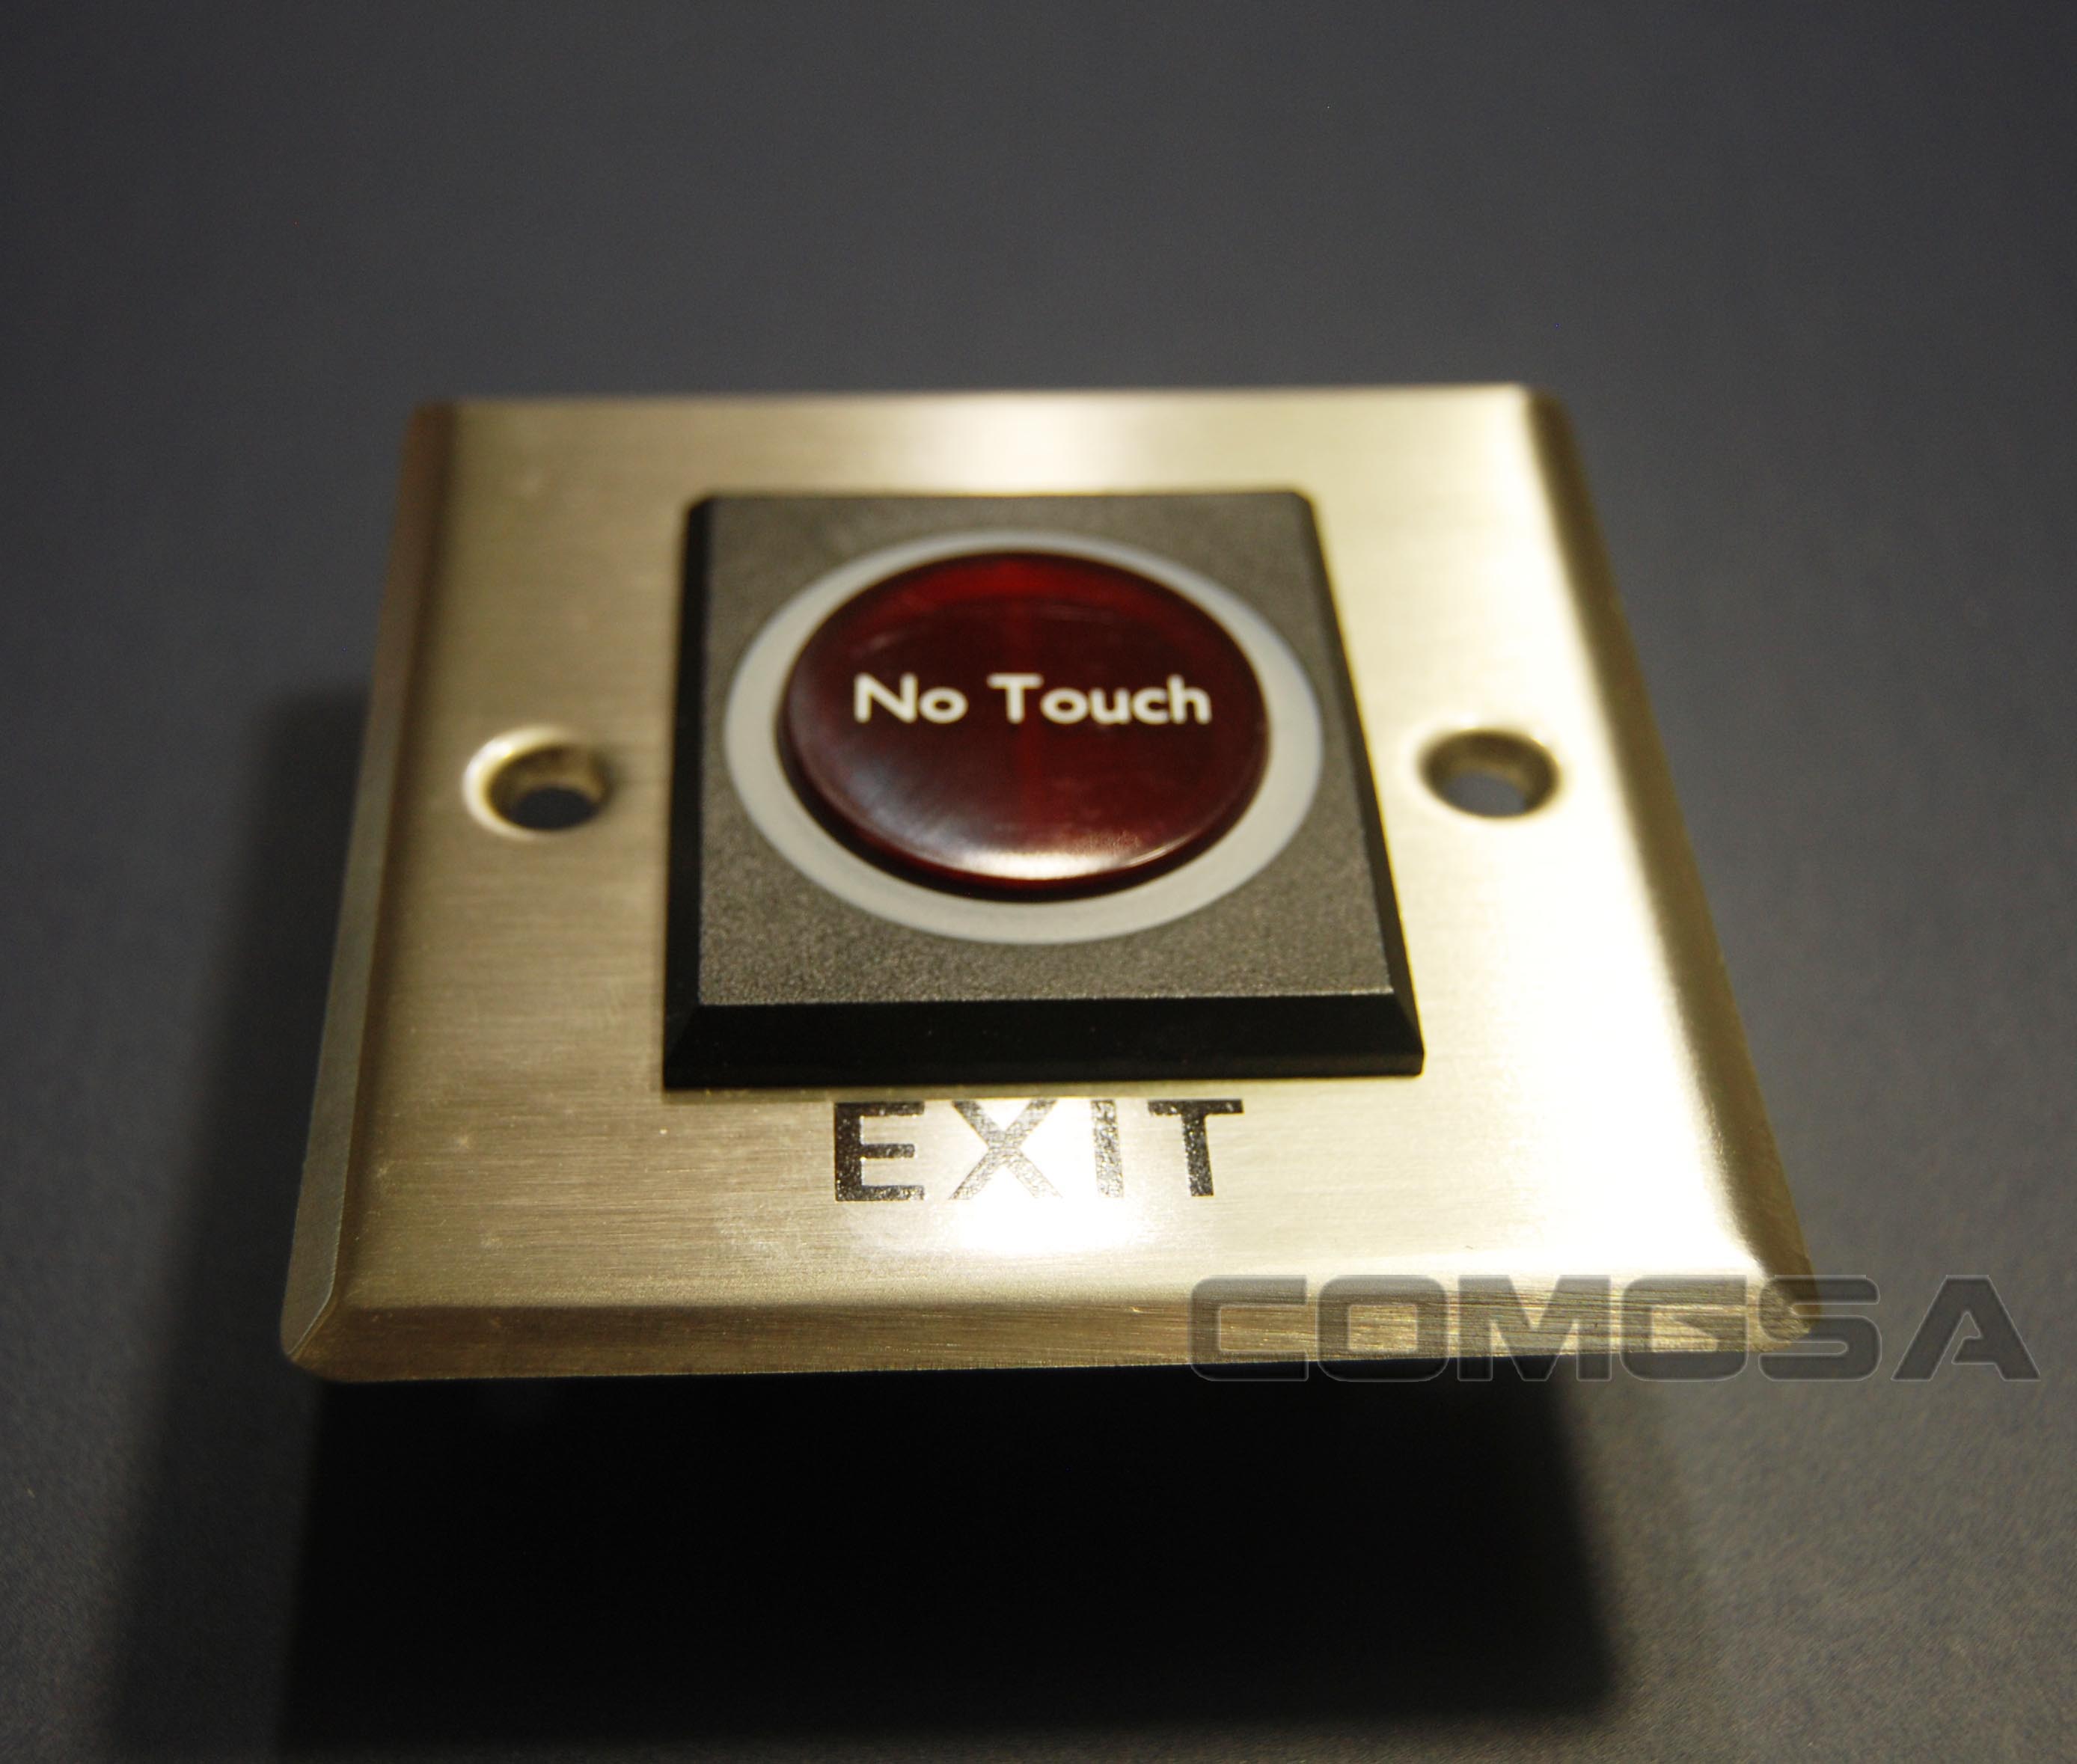 Botón No Touch de salida para control de acceso.